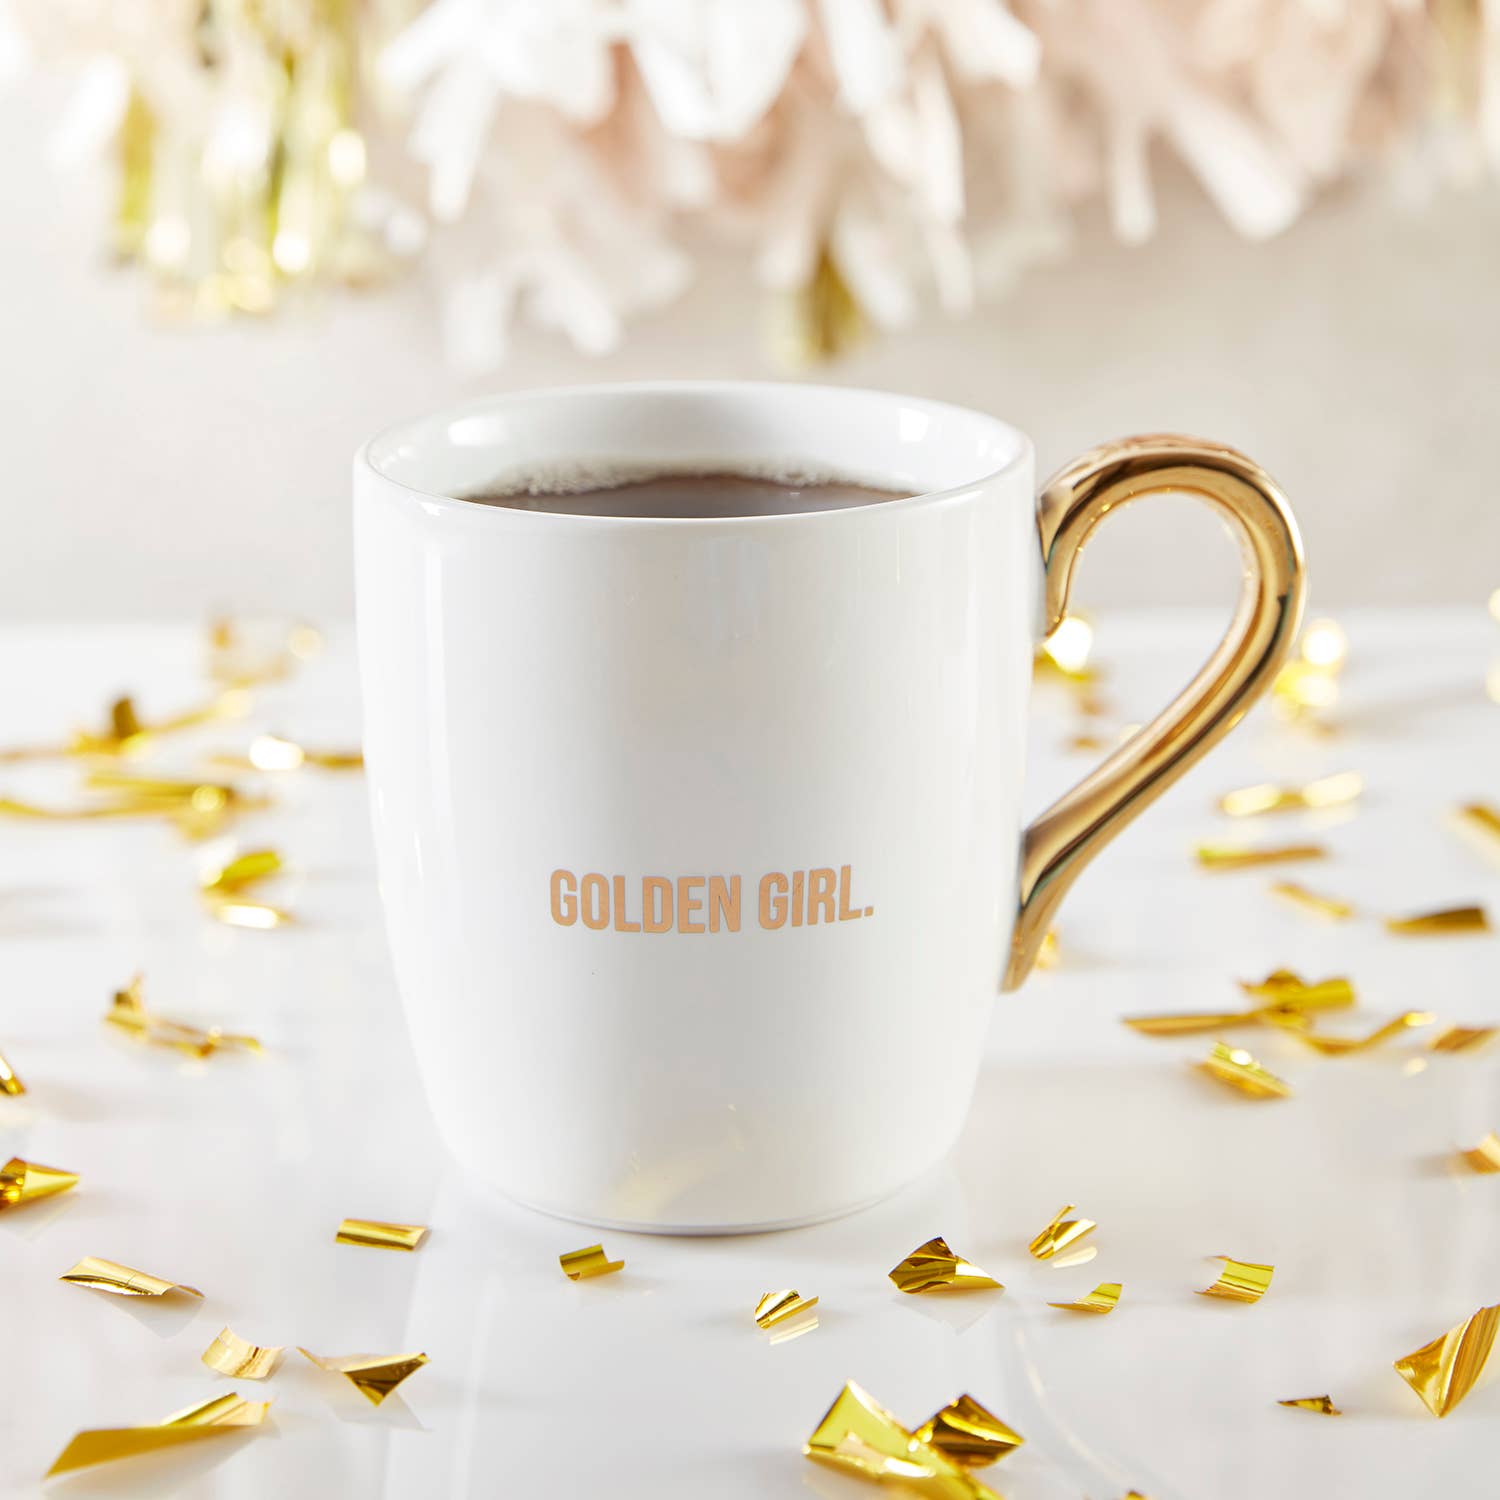 That's All Gold Mug - Golden Girl